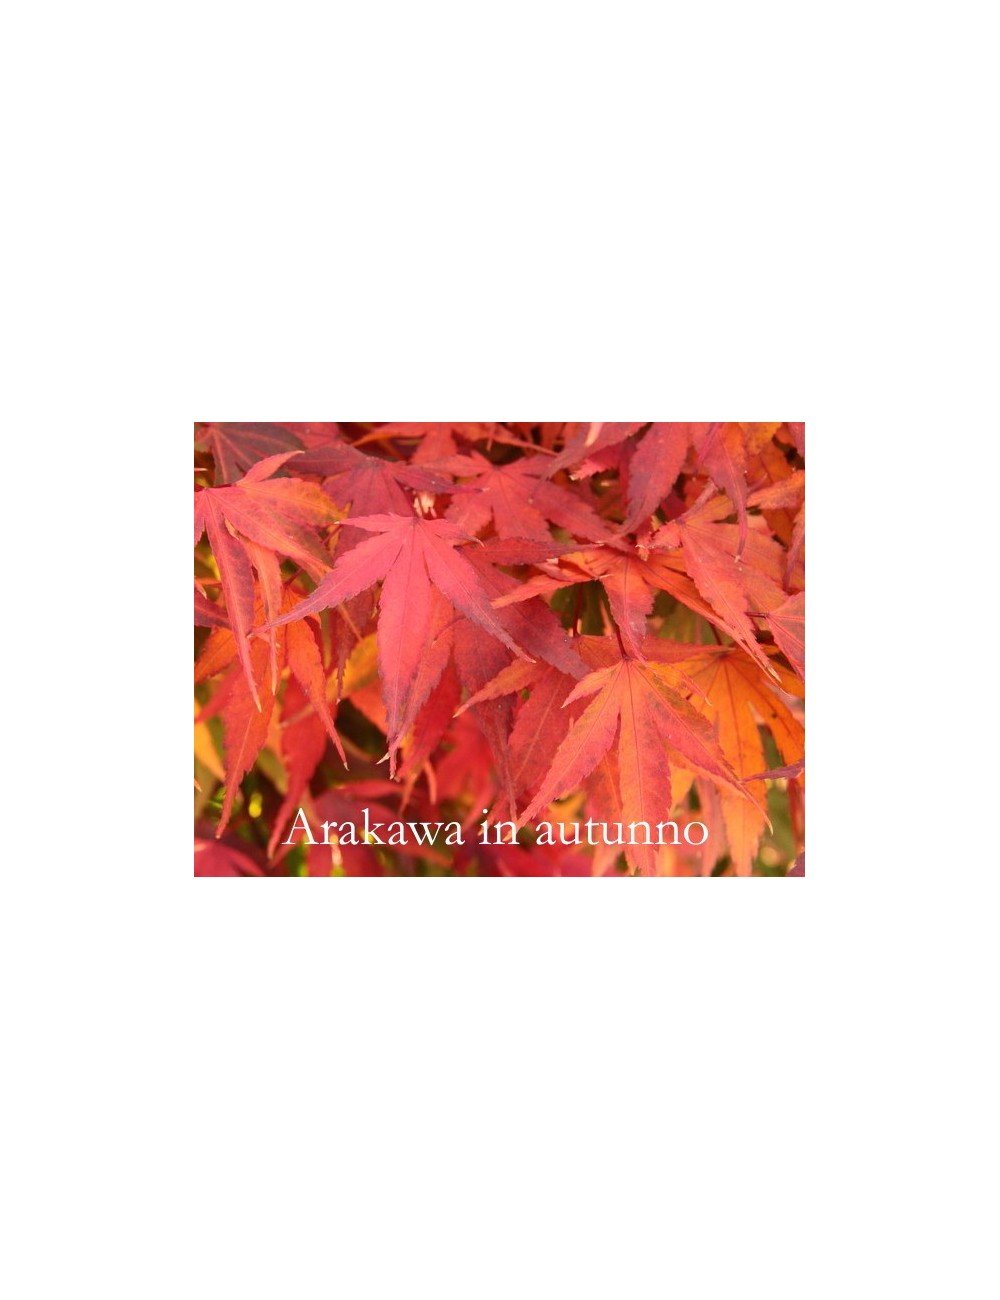 Acer palmatum Arakawa adatto per bonsai,raro piante in vendita sono in vaso 8x8